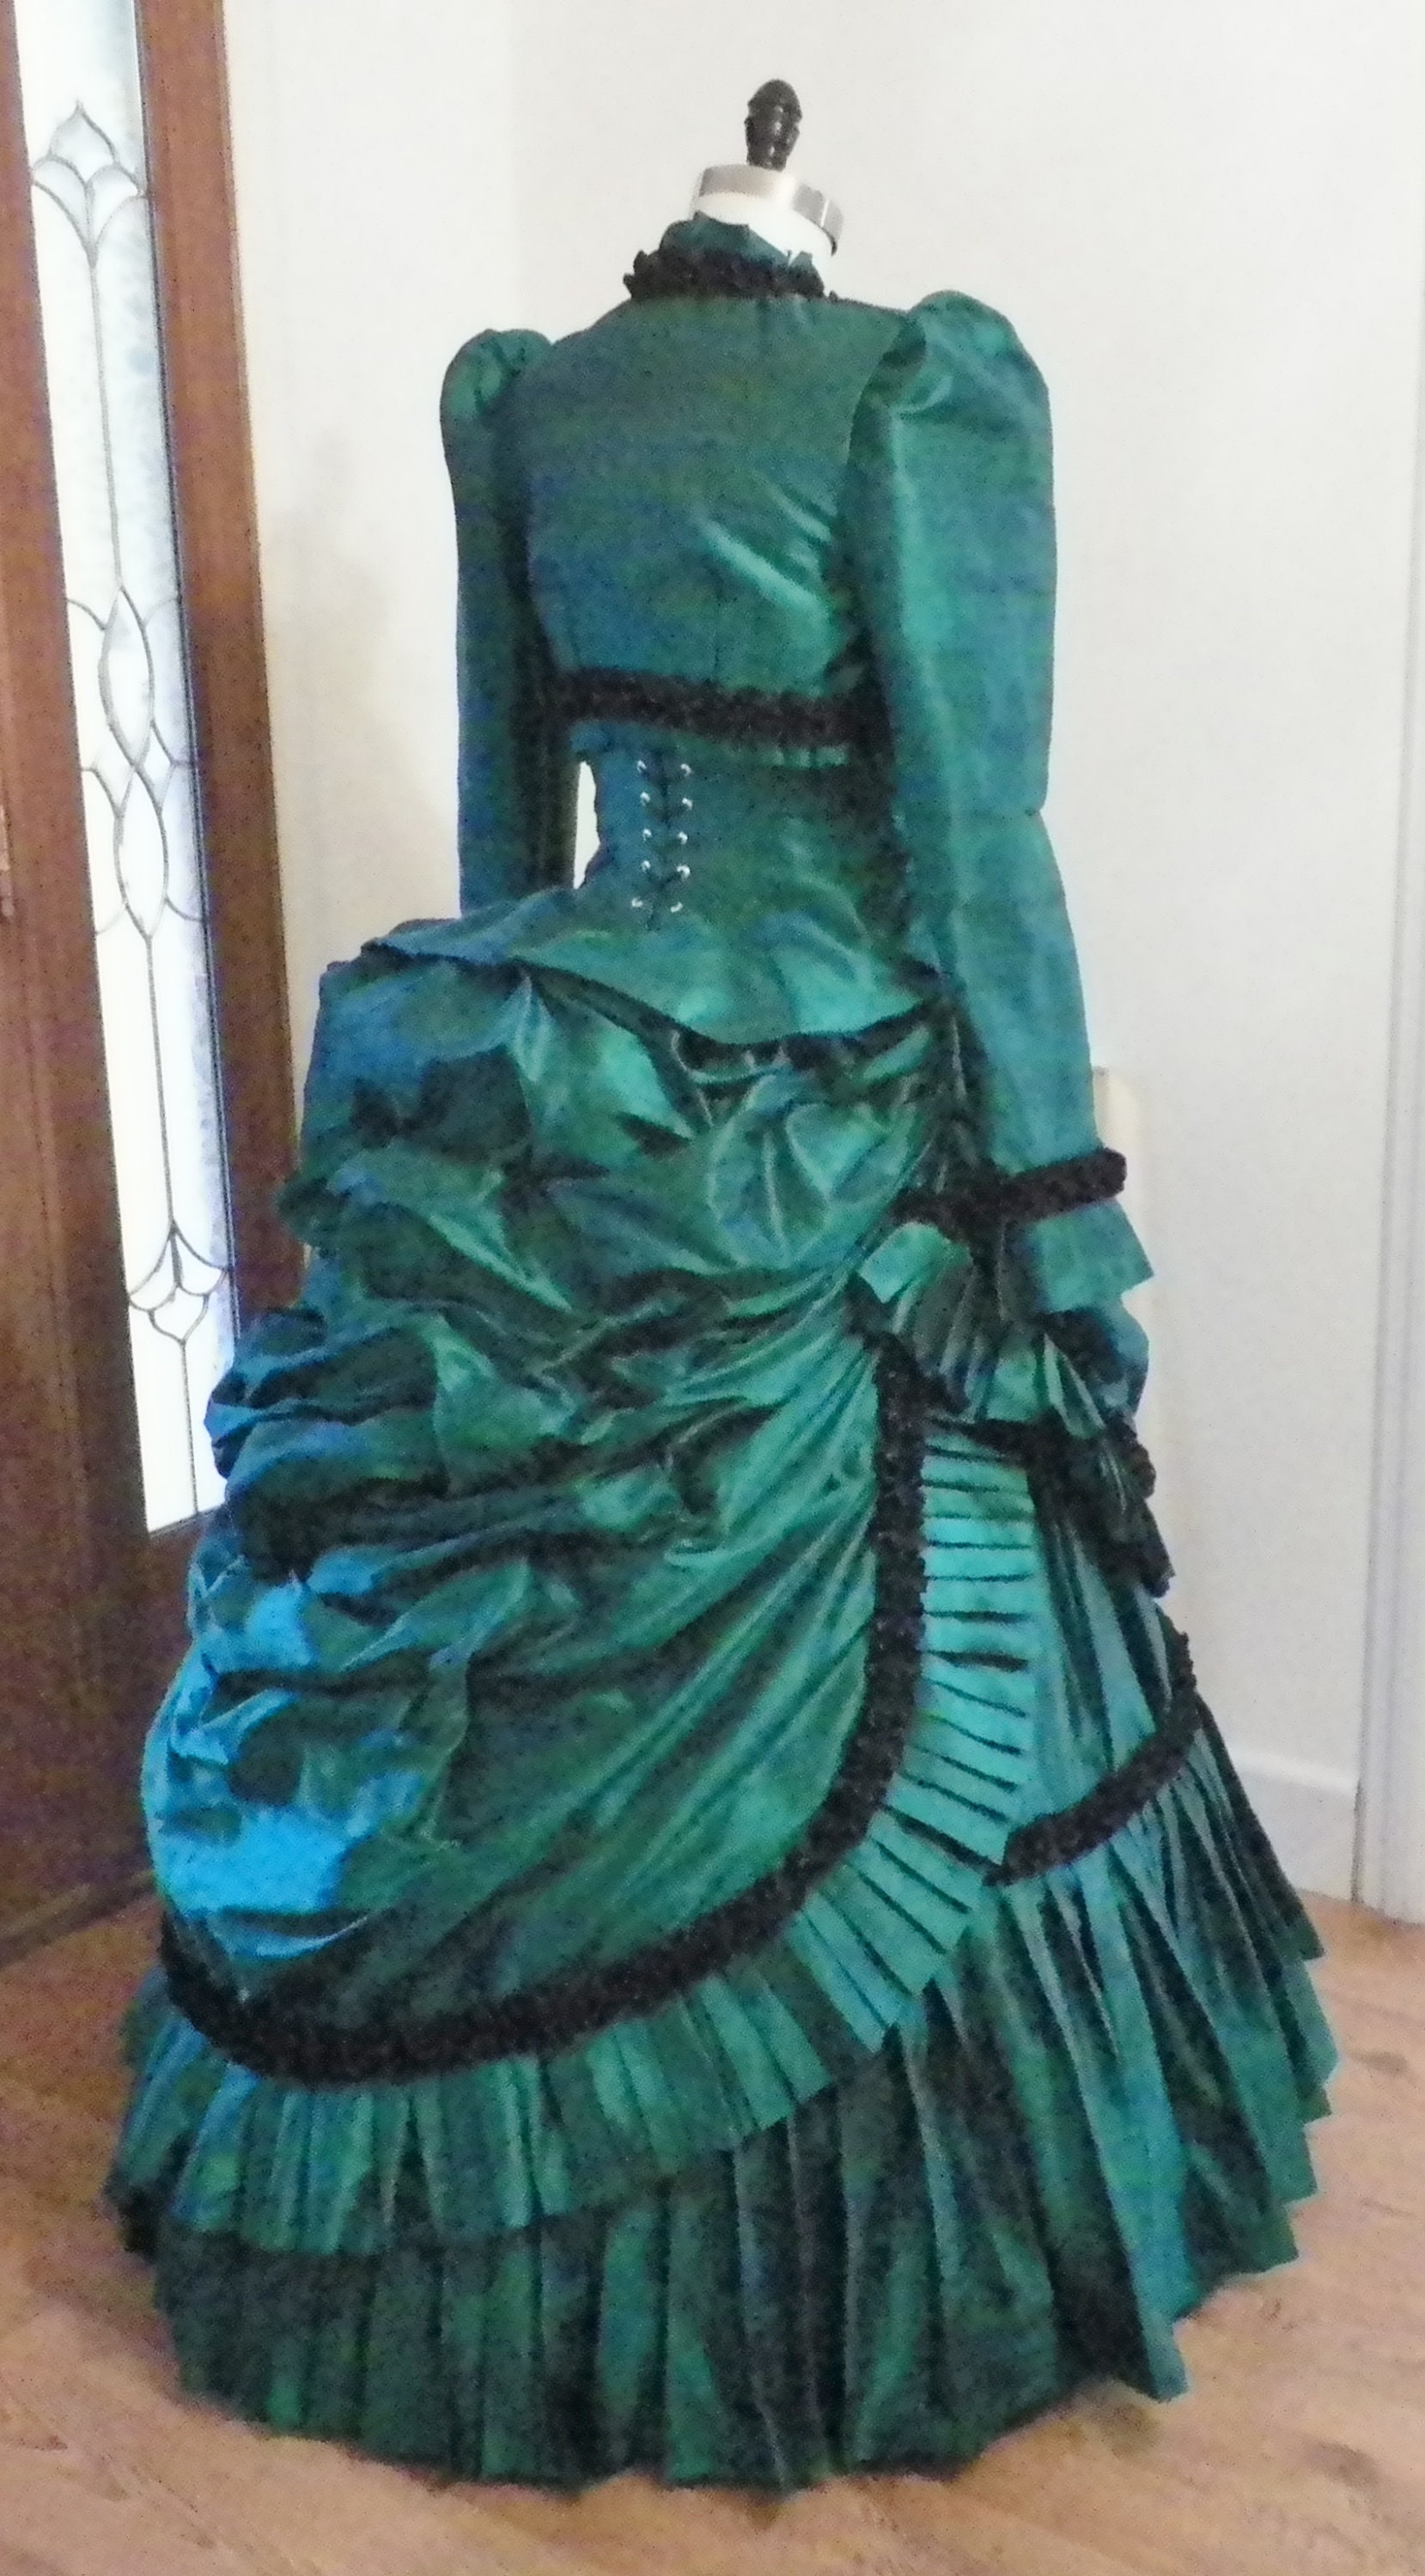 Victorian Bustle Dress, Steampunk Dress, Bustle Dress, Wedding Dress